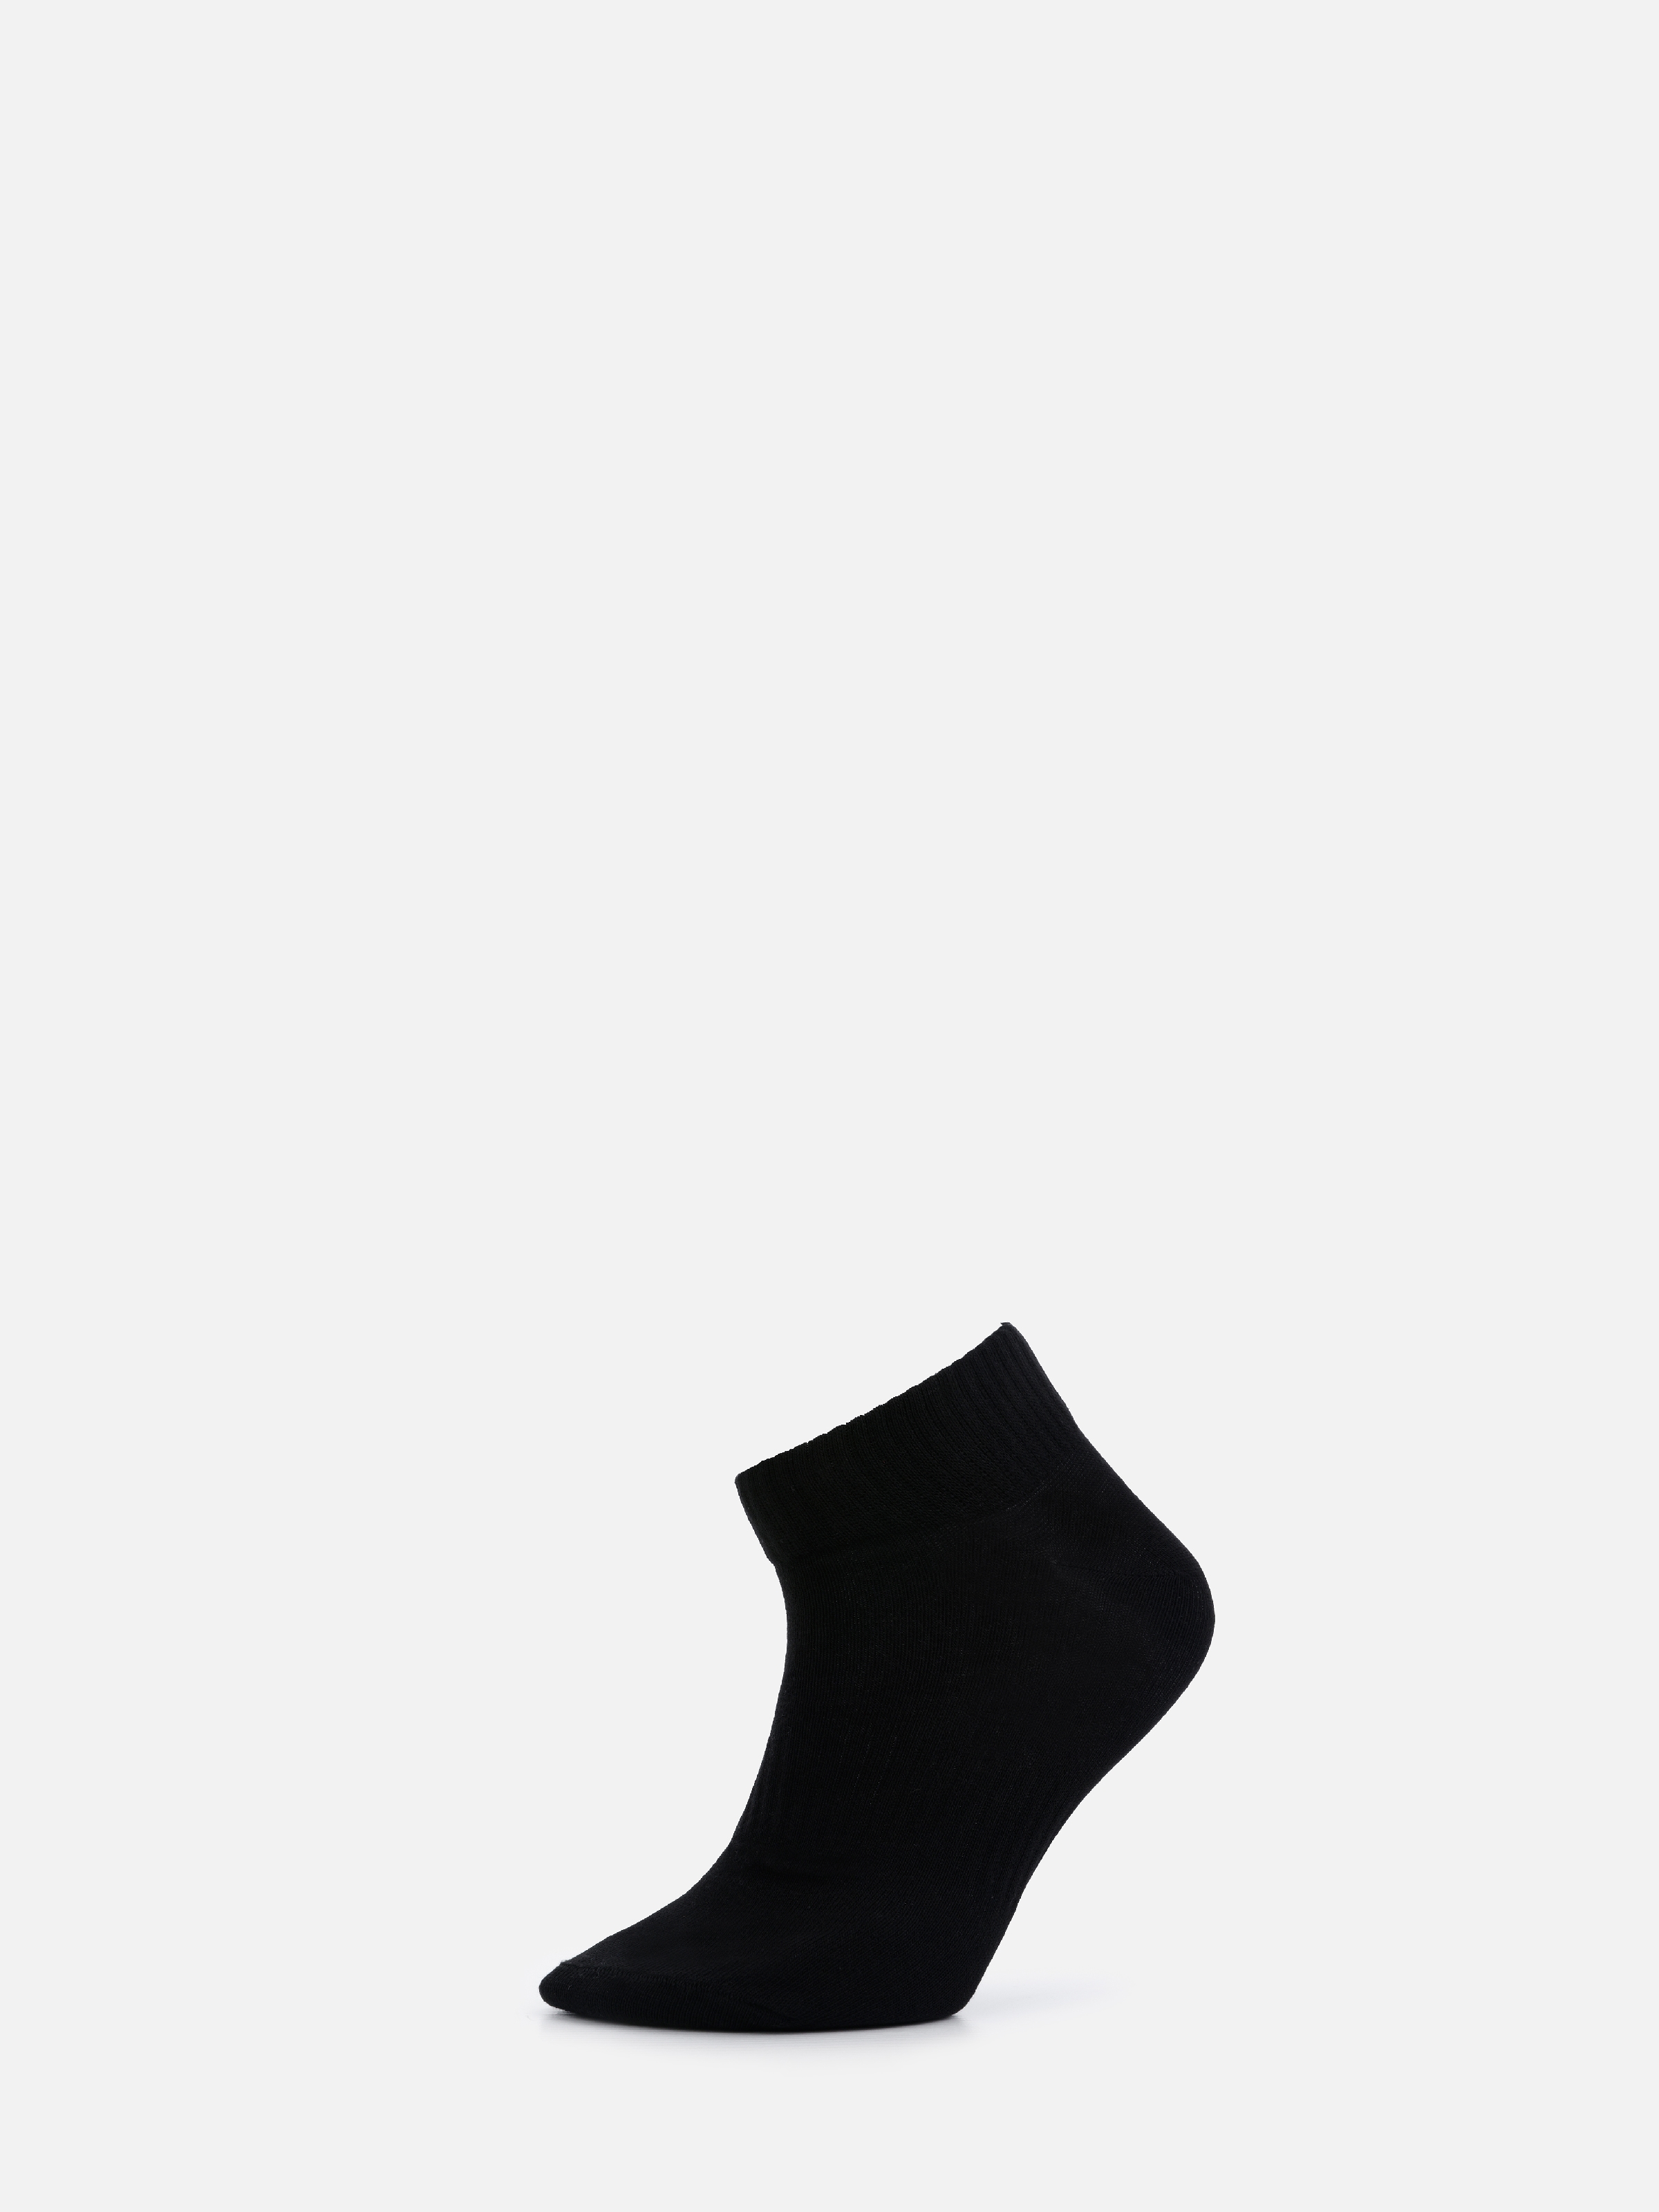 Показати інформацію про  Шкарпетки Чоловічі Чорні  